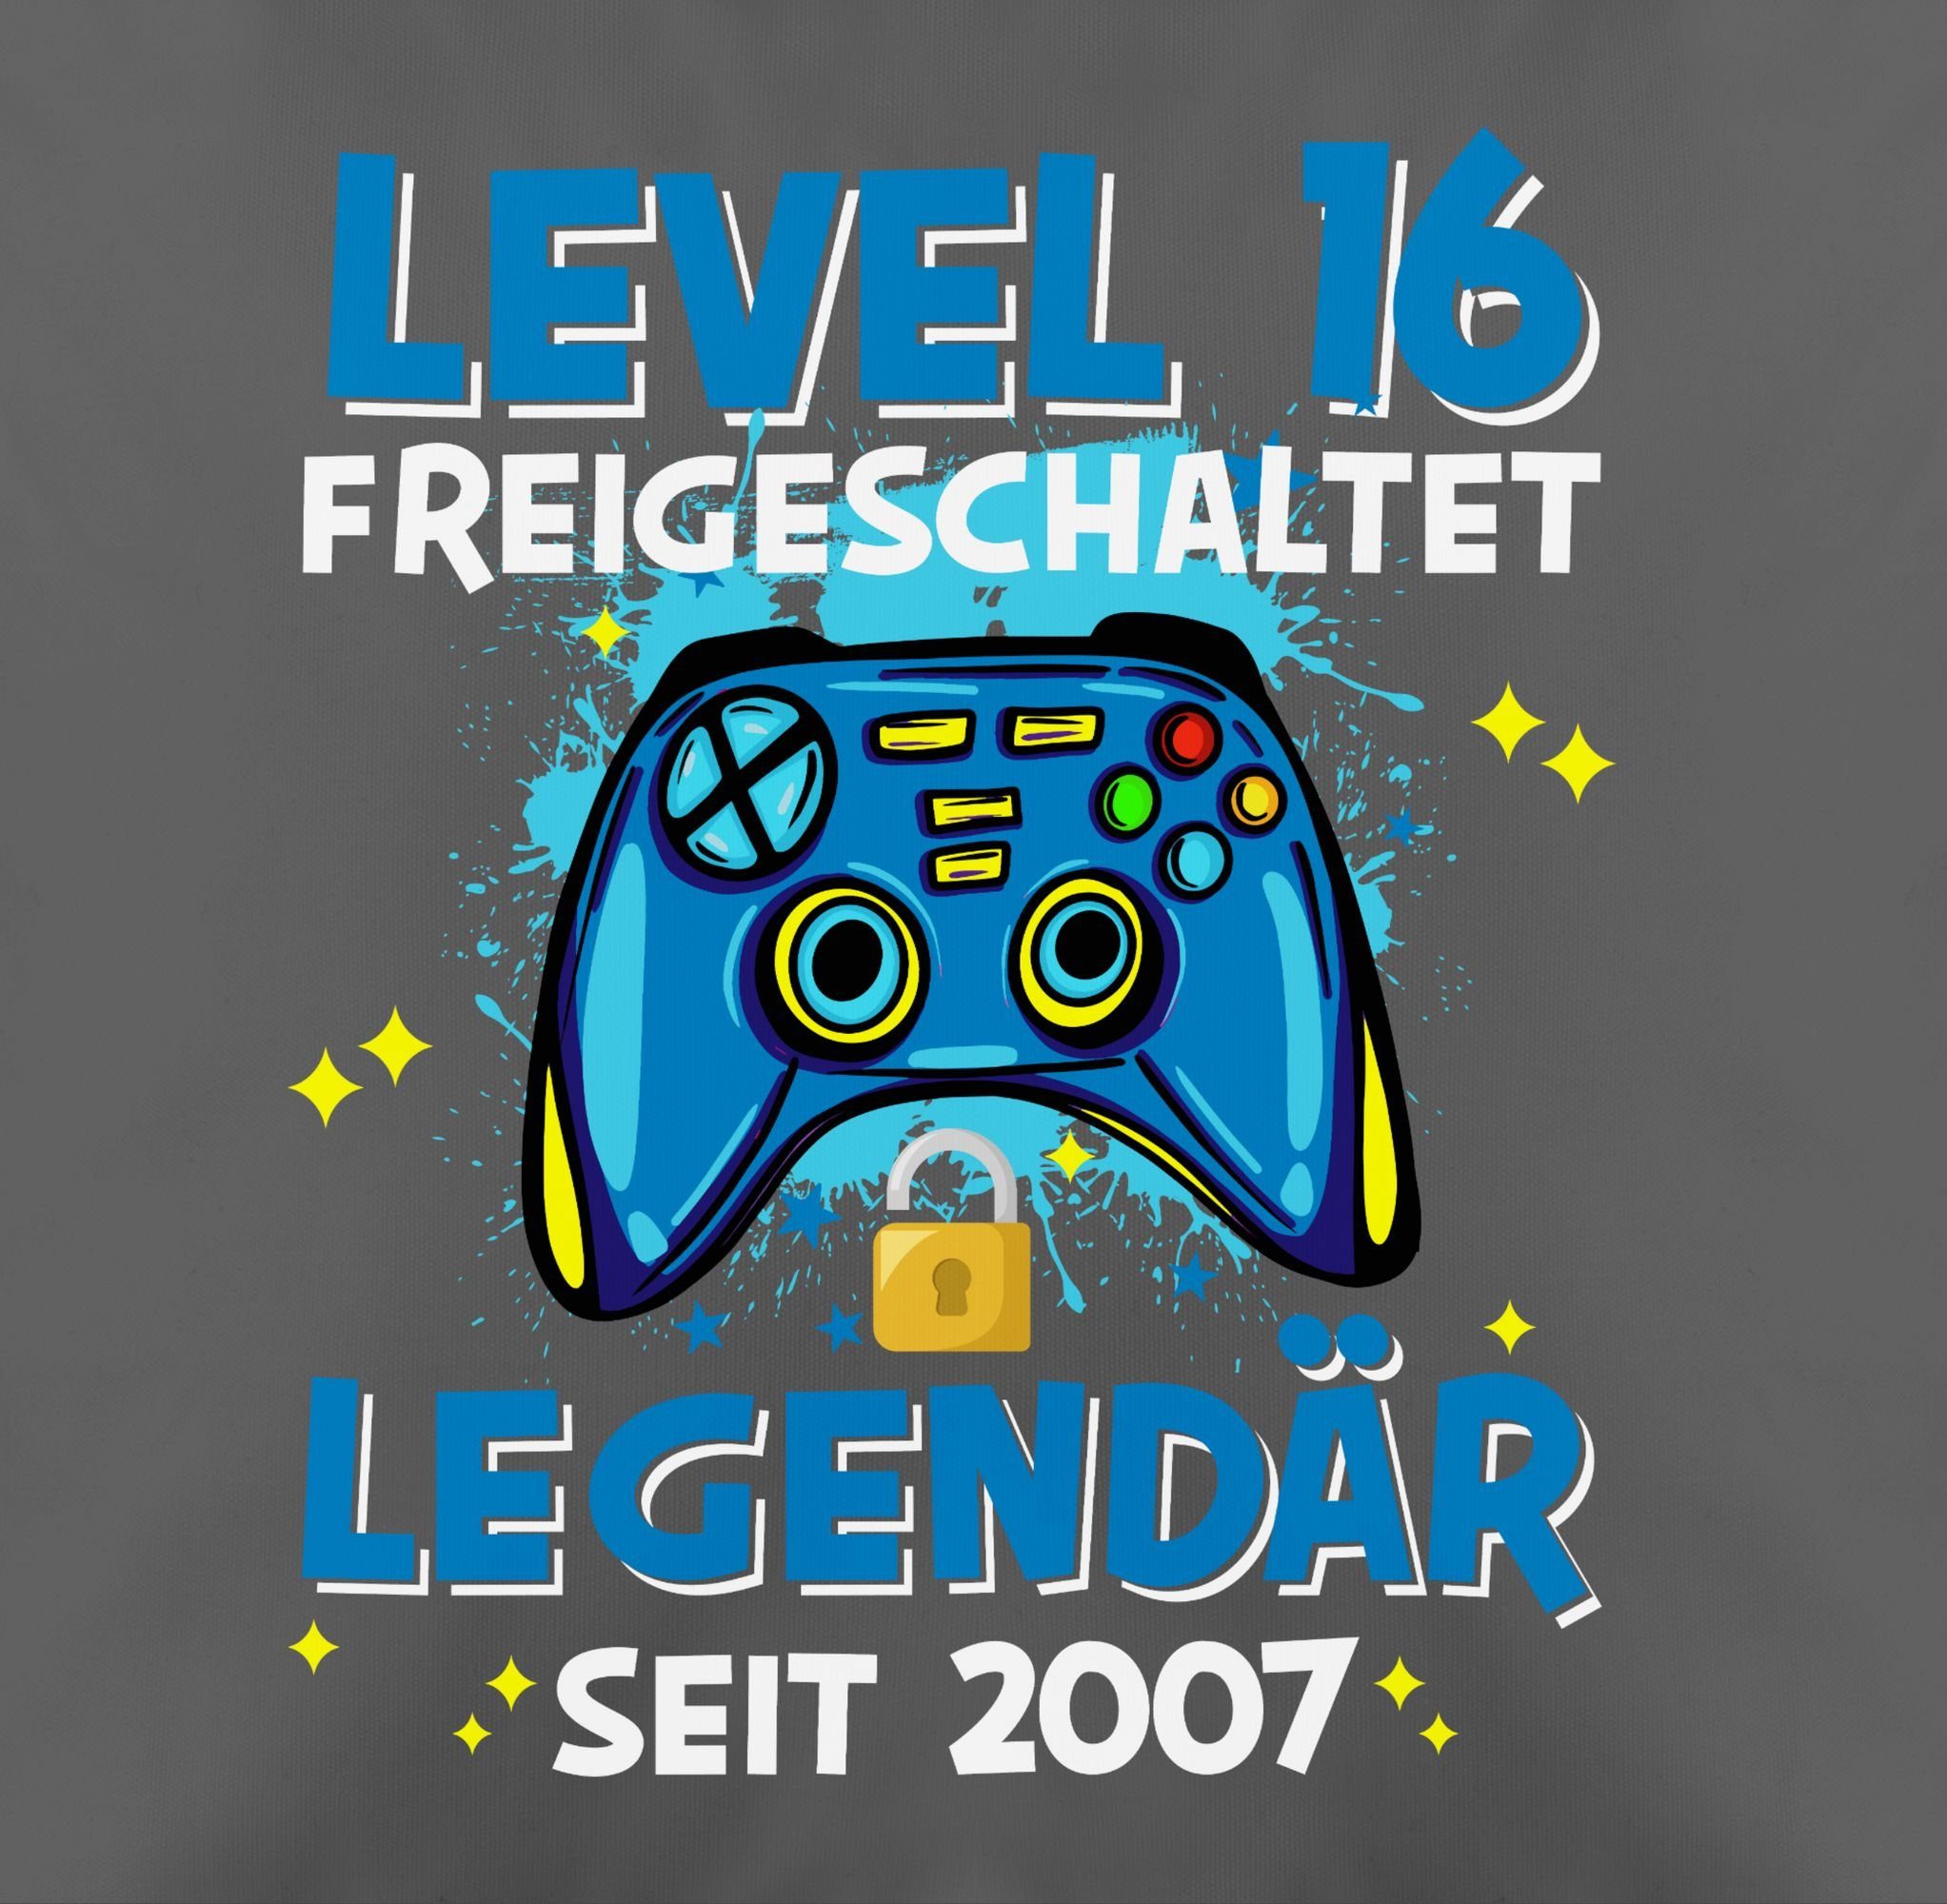 16 seit Stück), Shirtracer Legendär Level 2007, Geburtstag freigeschaltet (1 16. Kissen Kissenbezüge